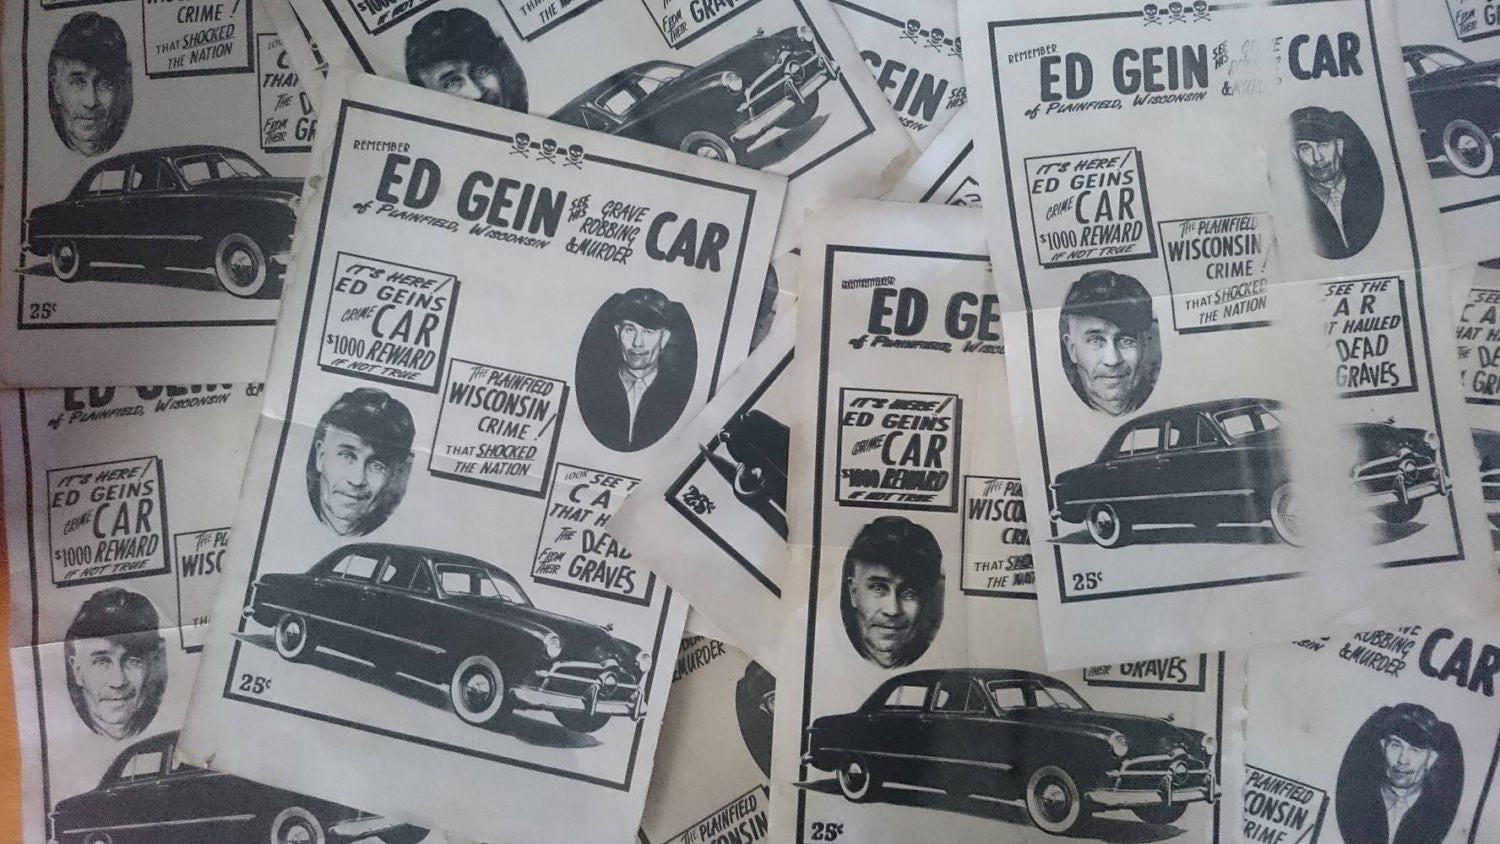 Ed Gein Car